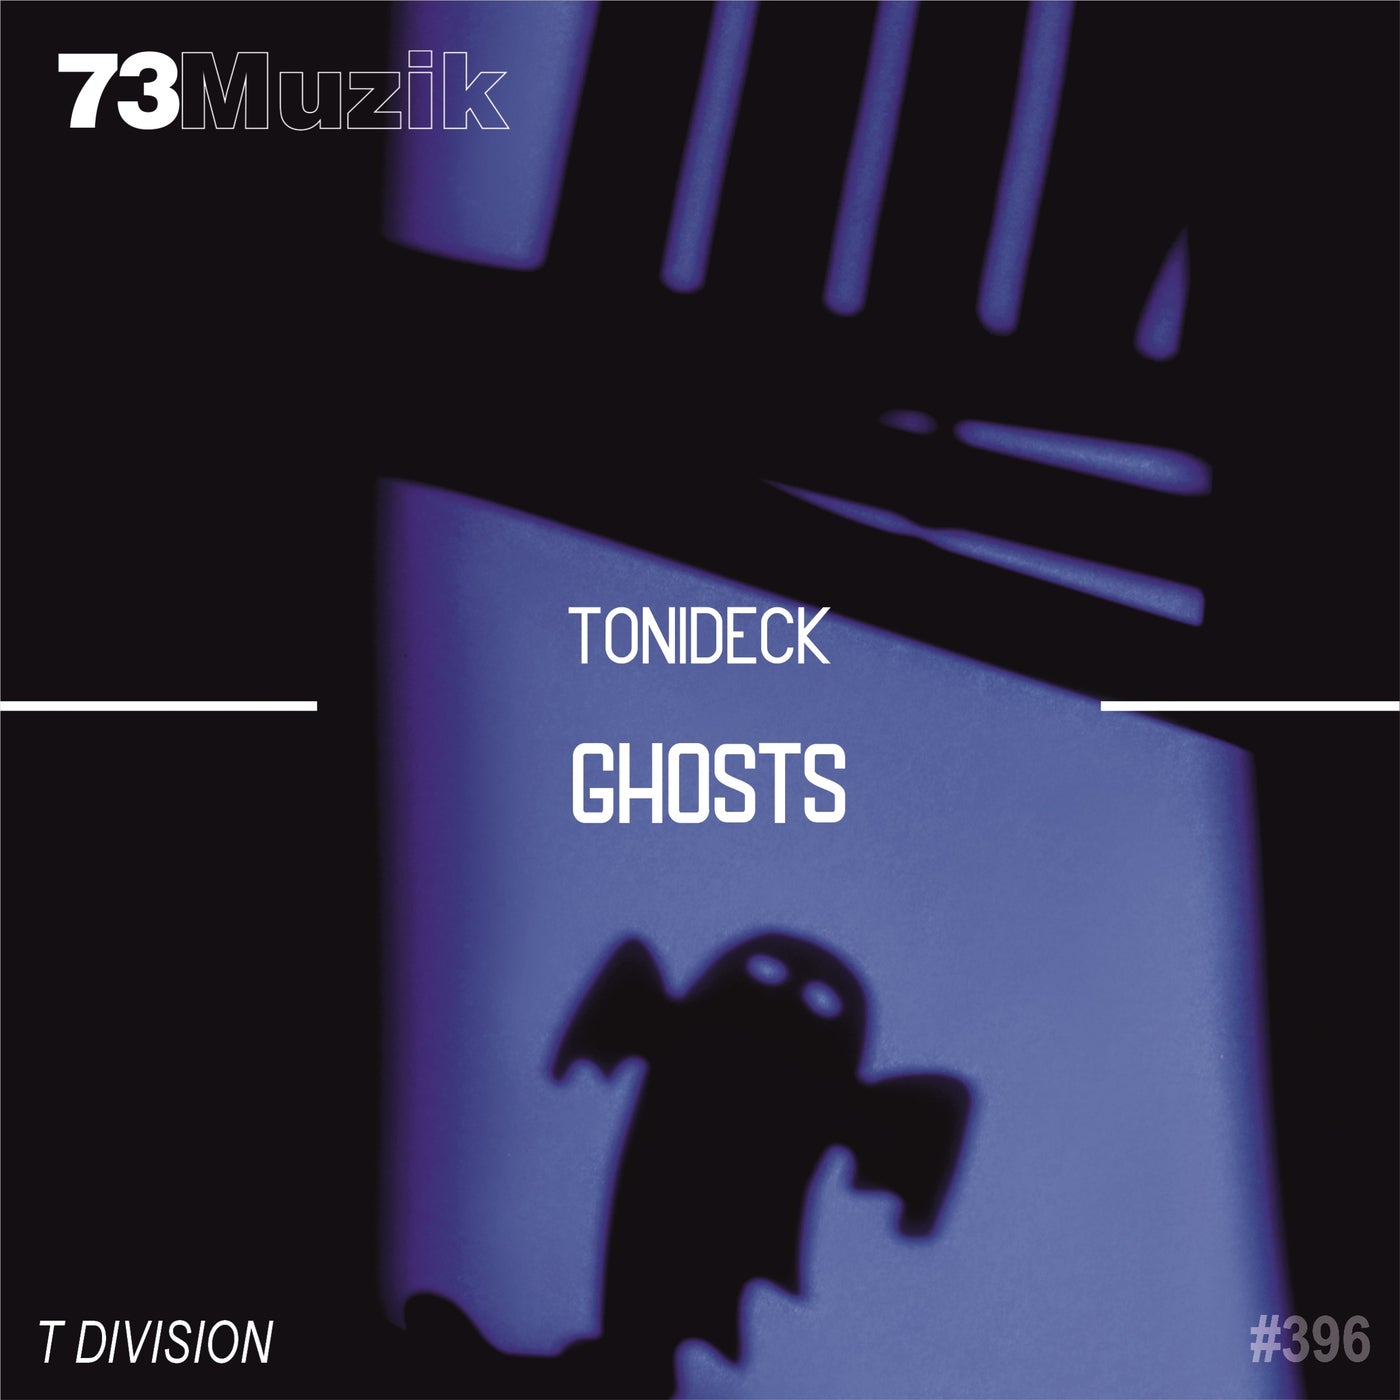 Tonideck – Ghosts [73M396]